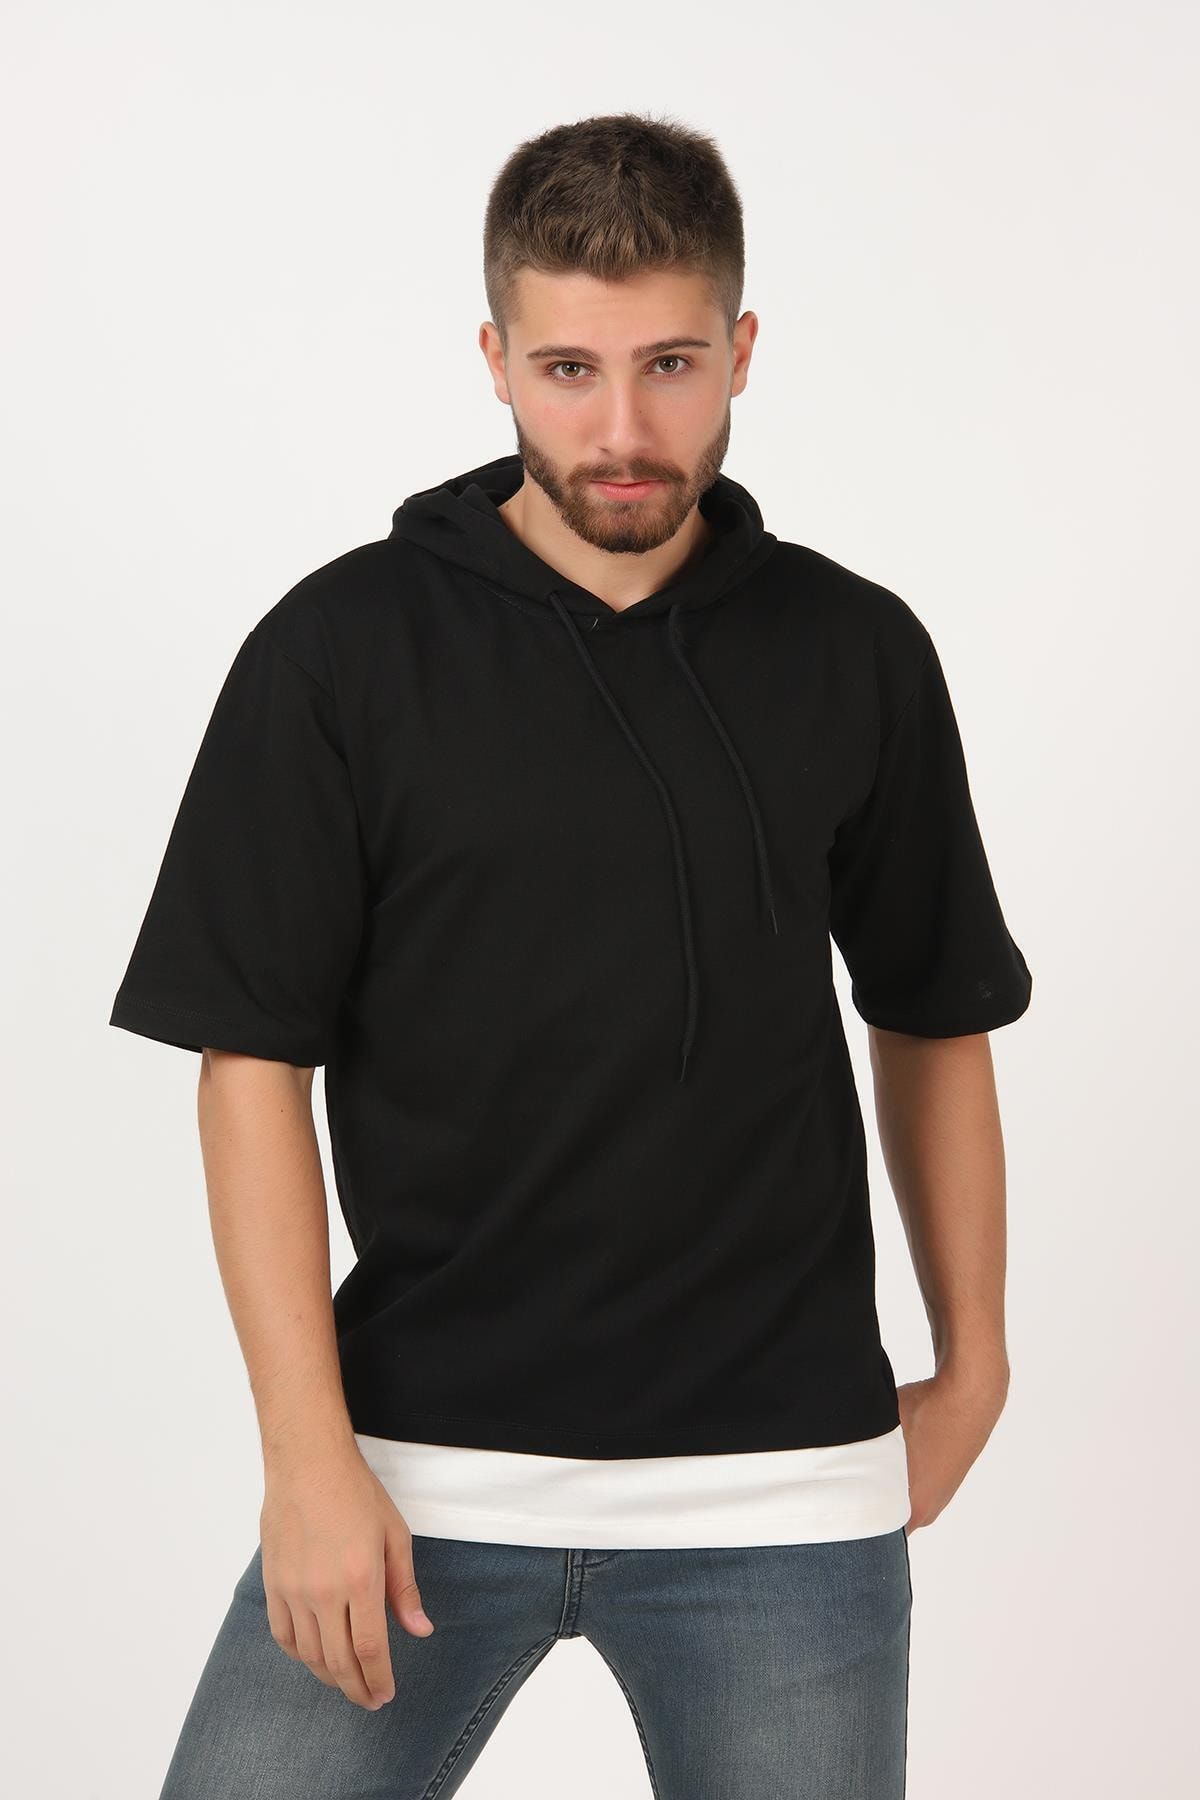 Tena Moda Erkek Siyah Kısa Kollu Kapşonlu Dirsek Kol Oversize Tişört